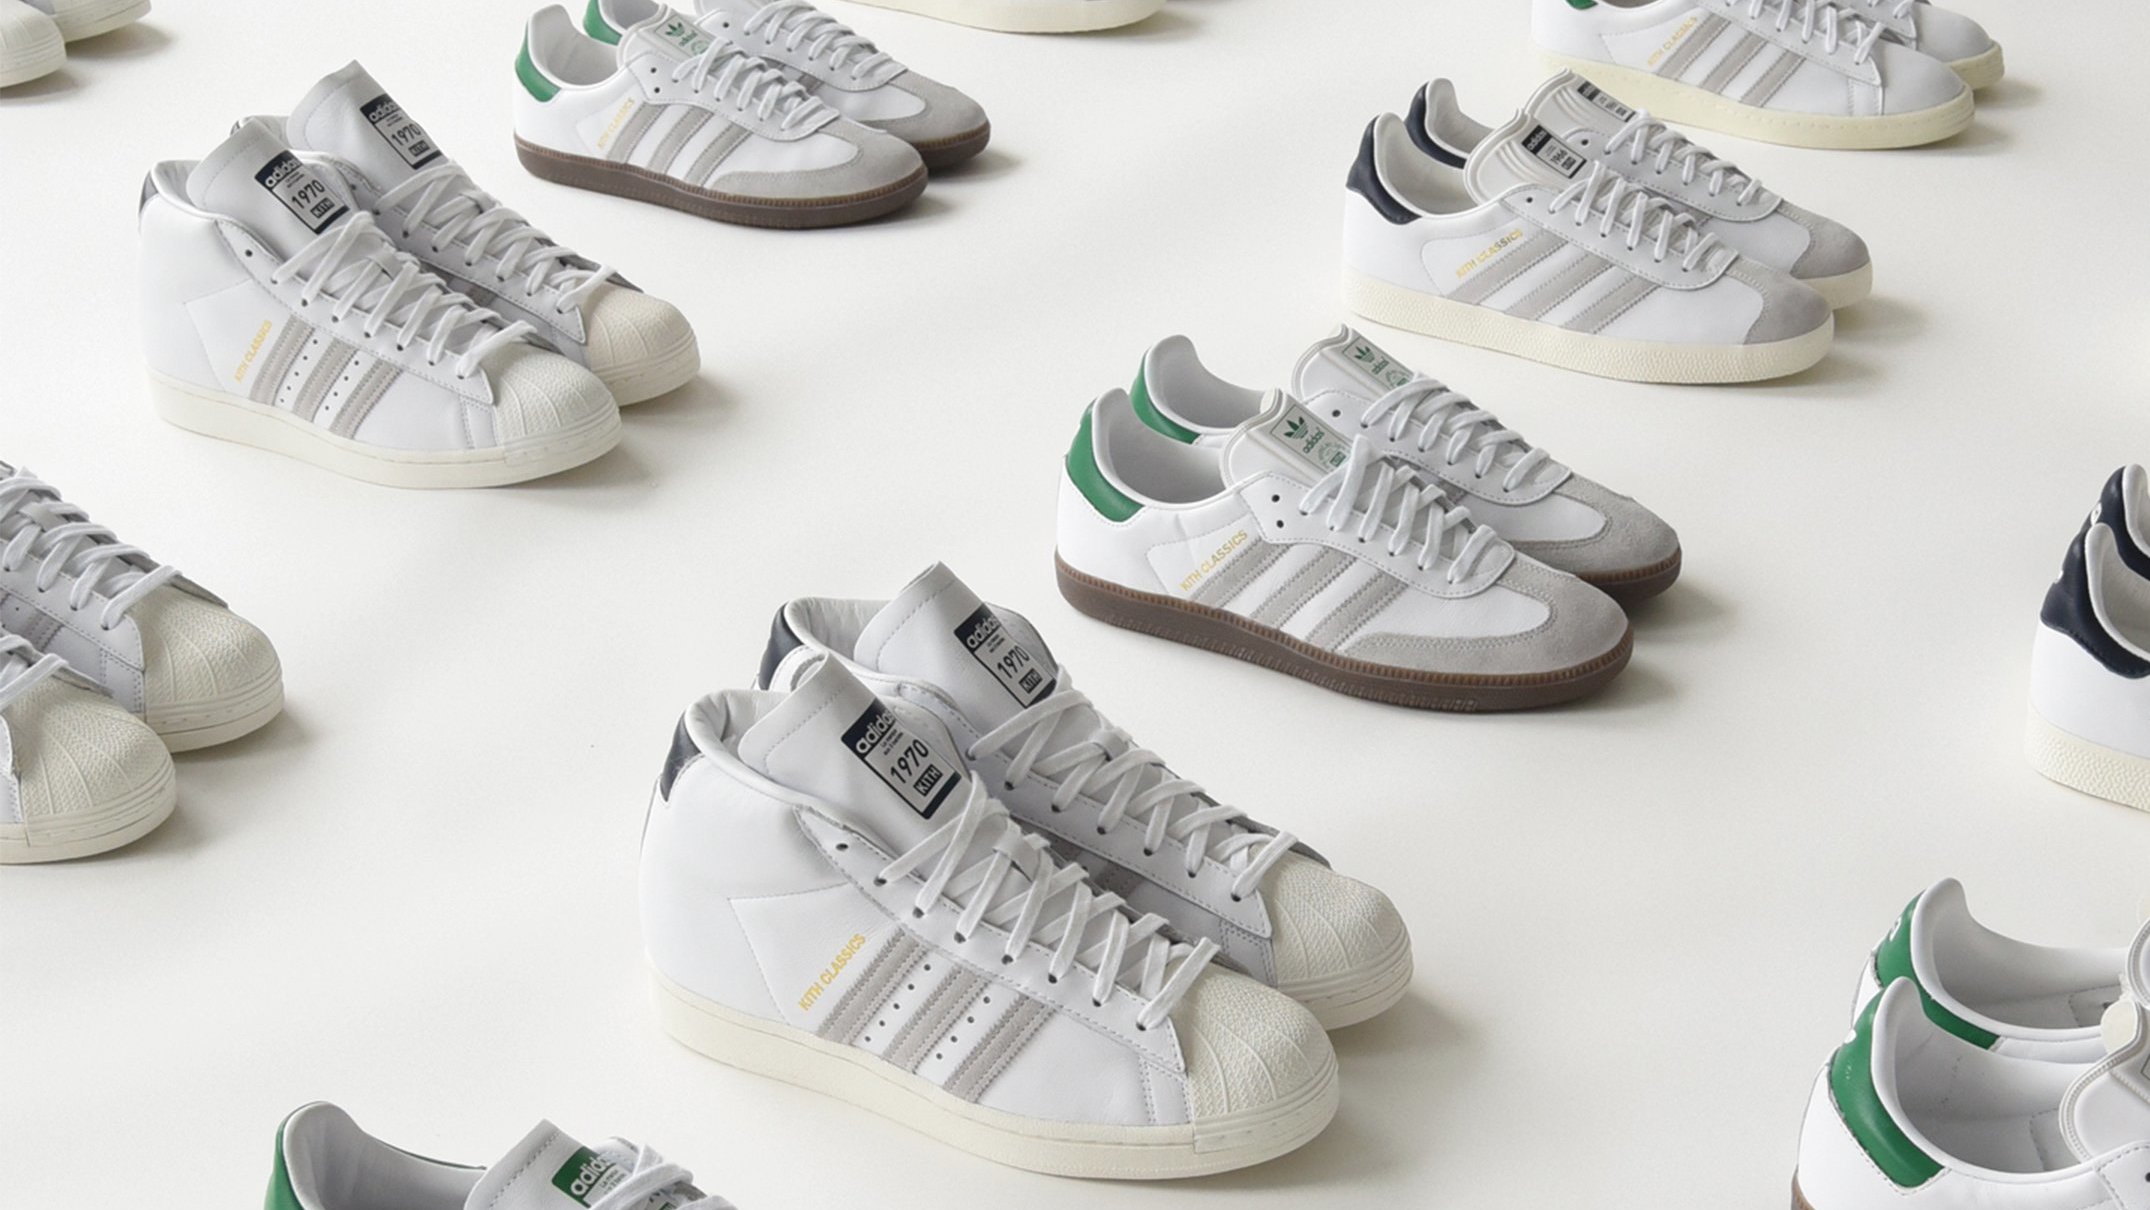 ADIDAS ORIGINALS Samba OG leather and suede sneakers | Suede sneakers,  Adidas shoes originals, Adidas originals